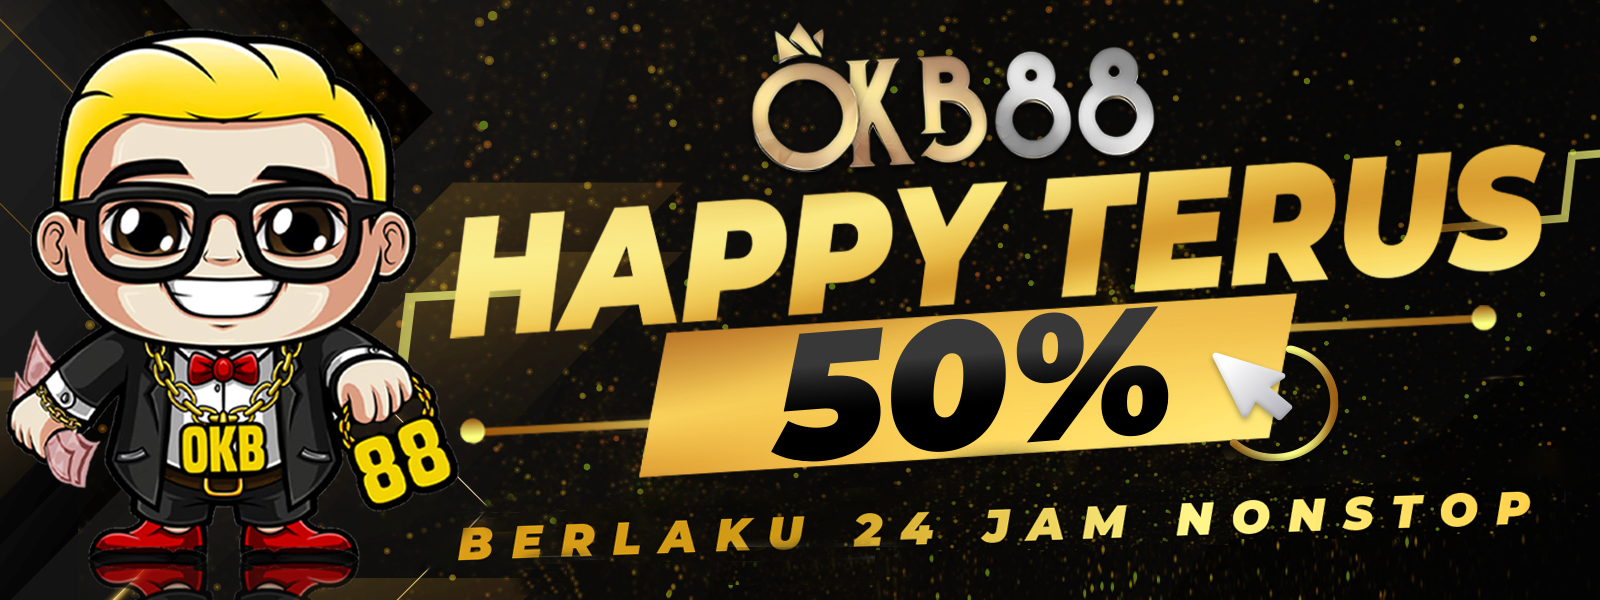 OKB8 HAPPY TERUS 50%